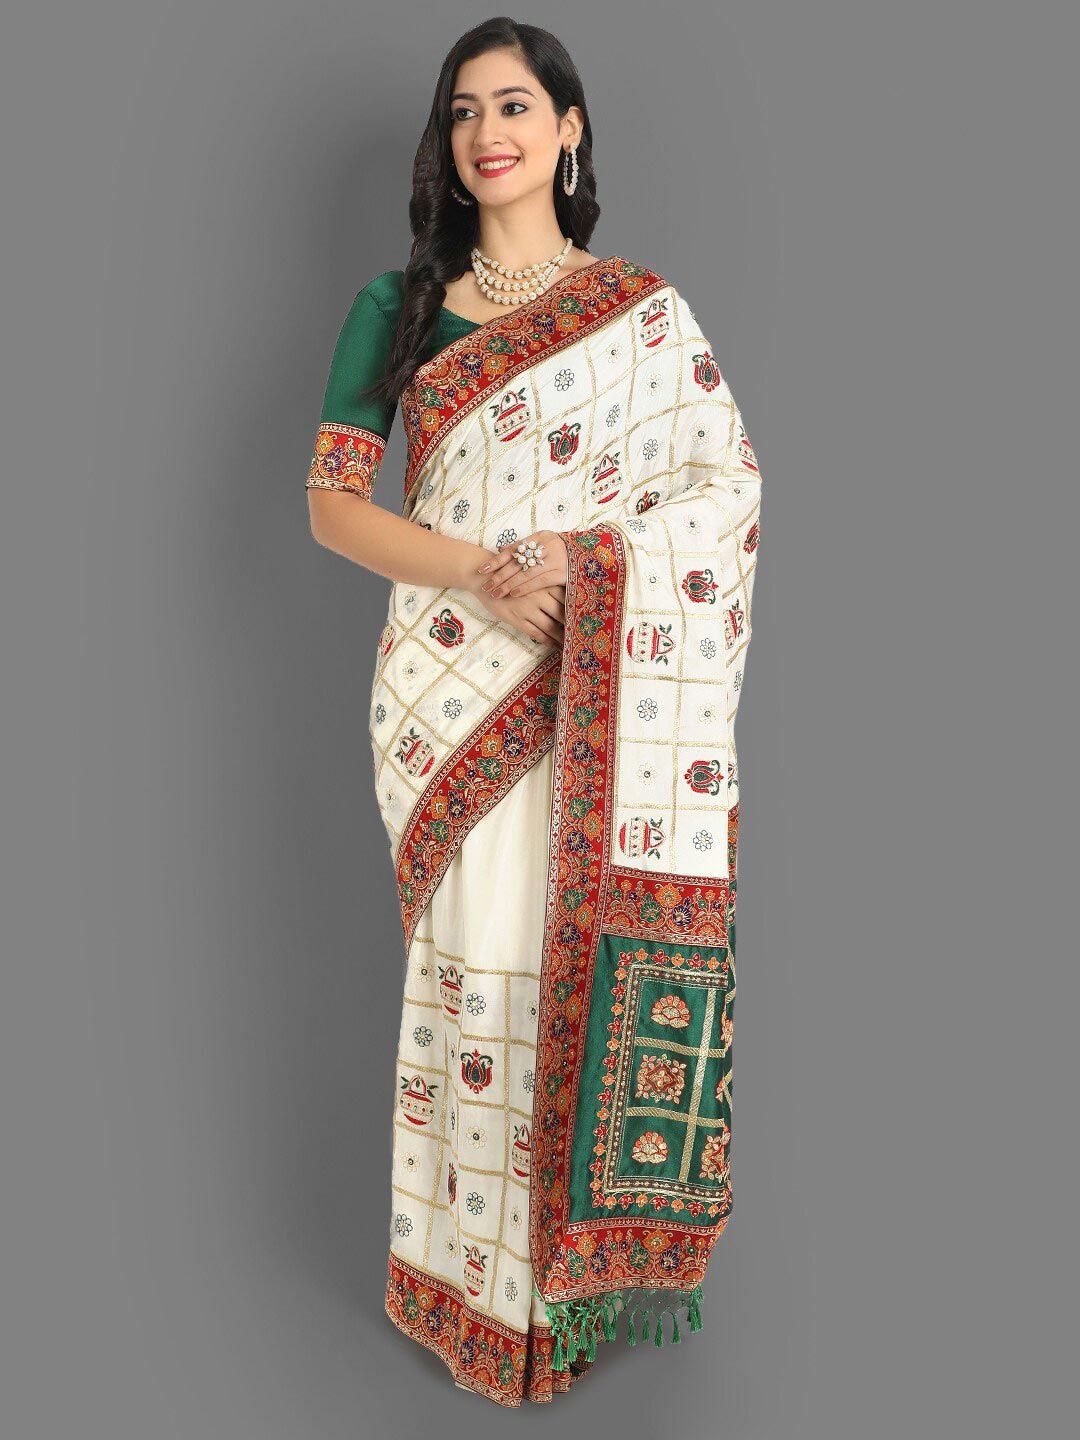 ASPORA Women White & Red Ethnic Motifs Pure Silk Heavy Work Maheshwari Saree Price in India